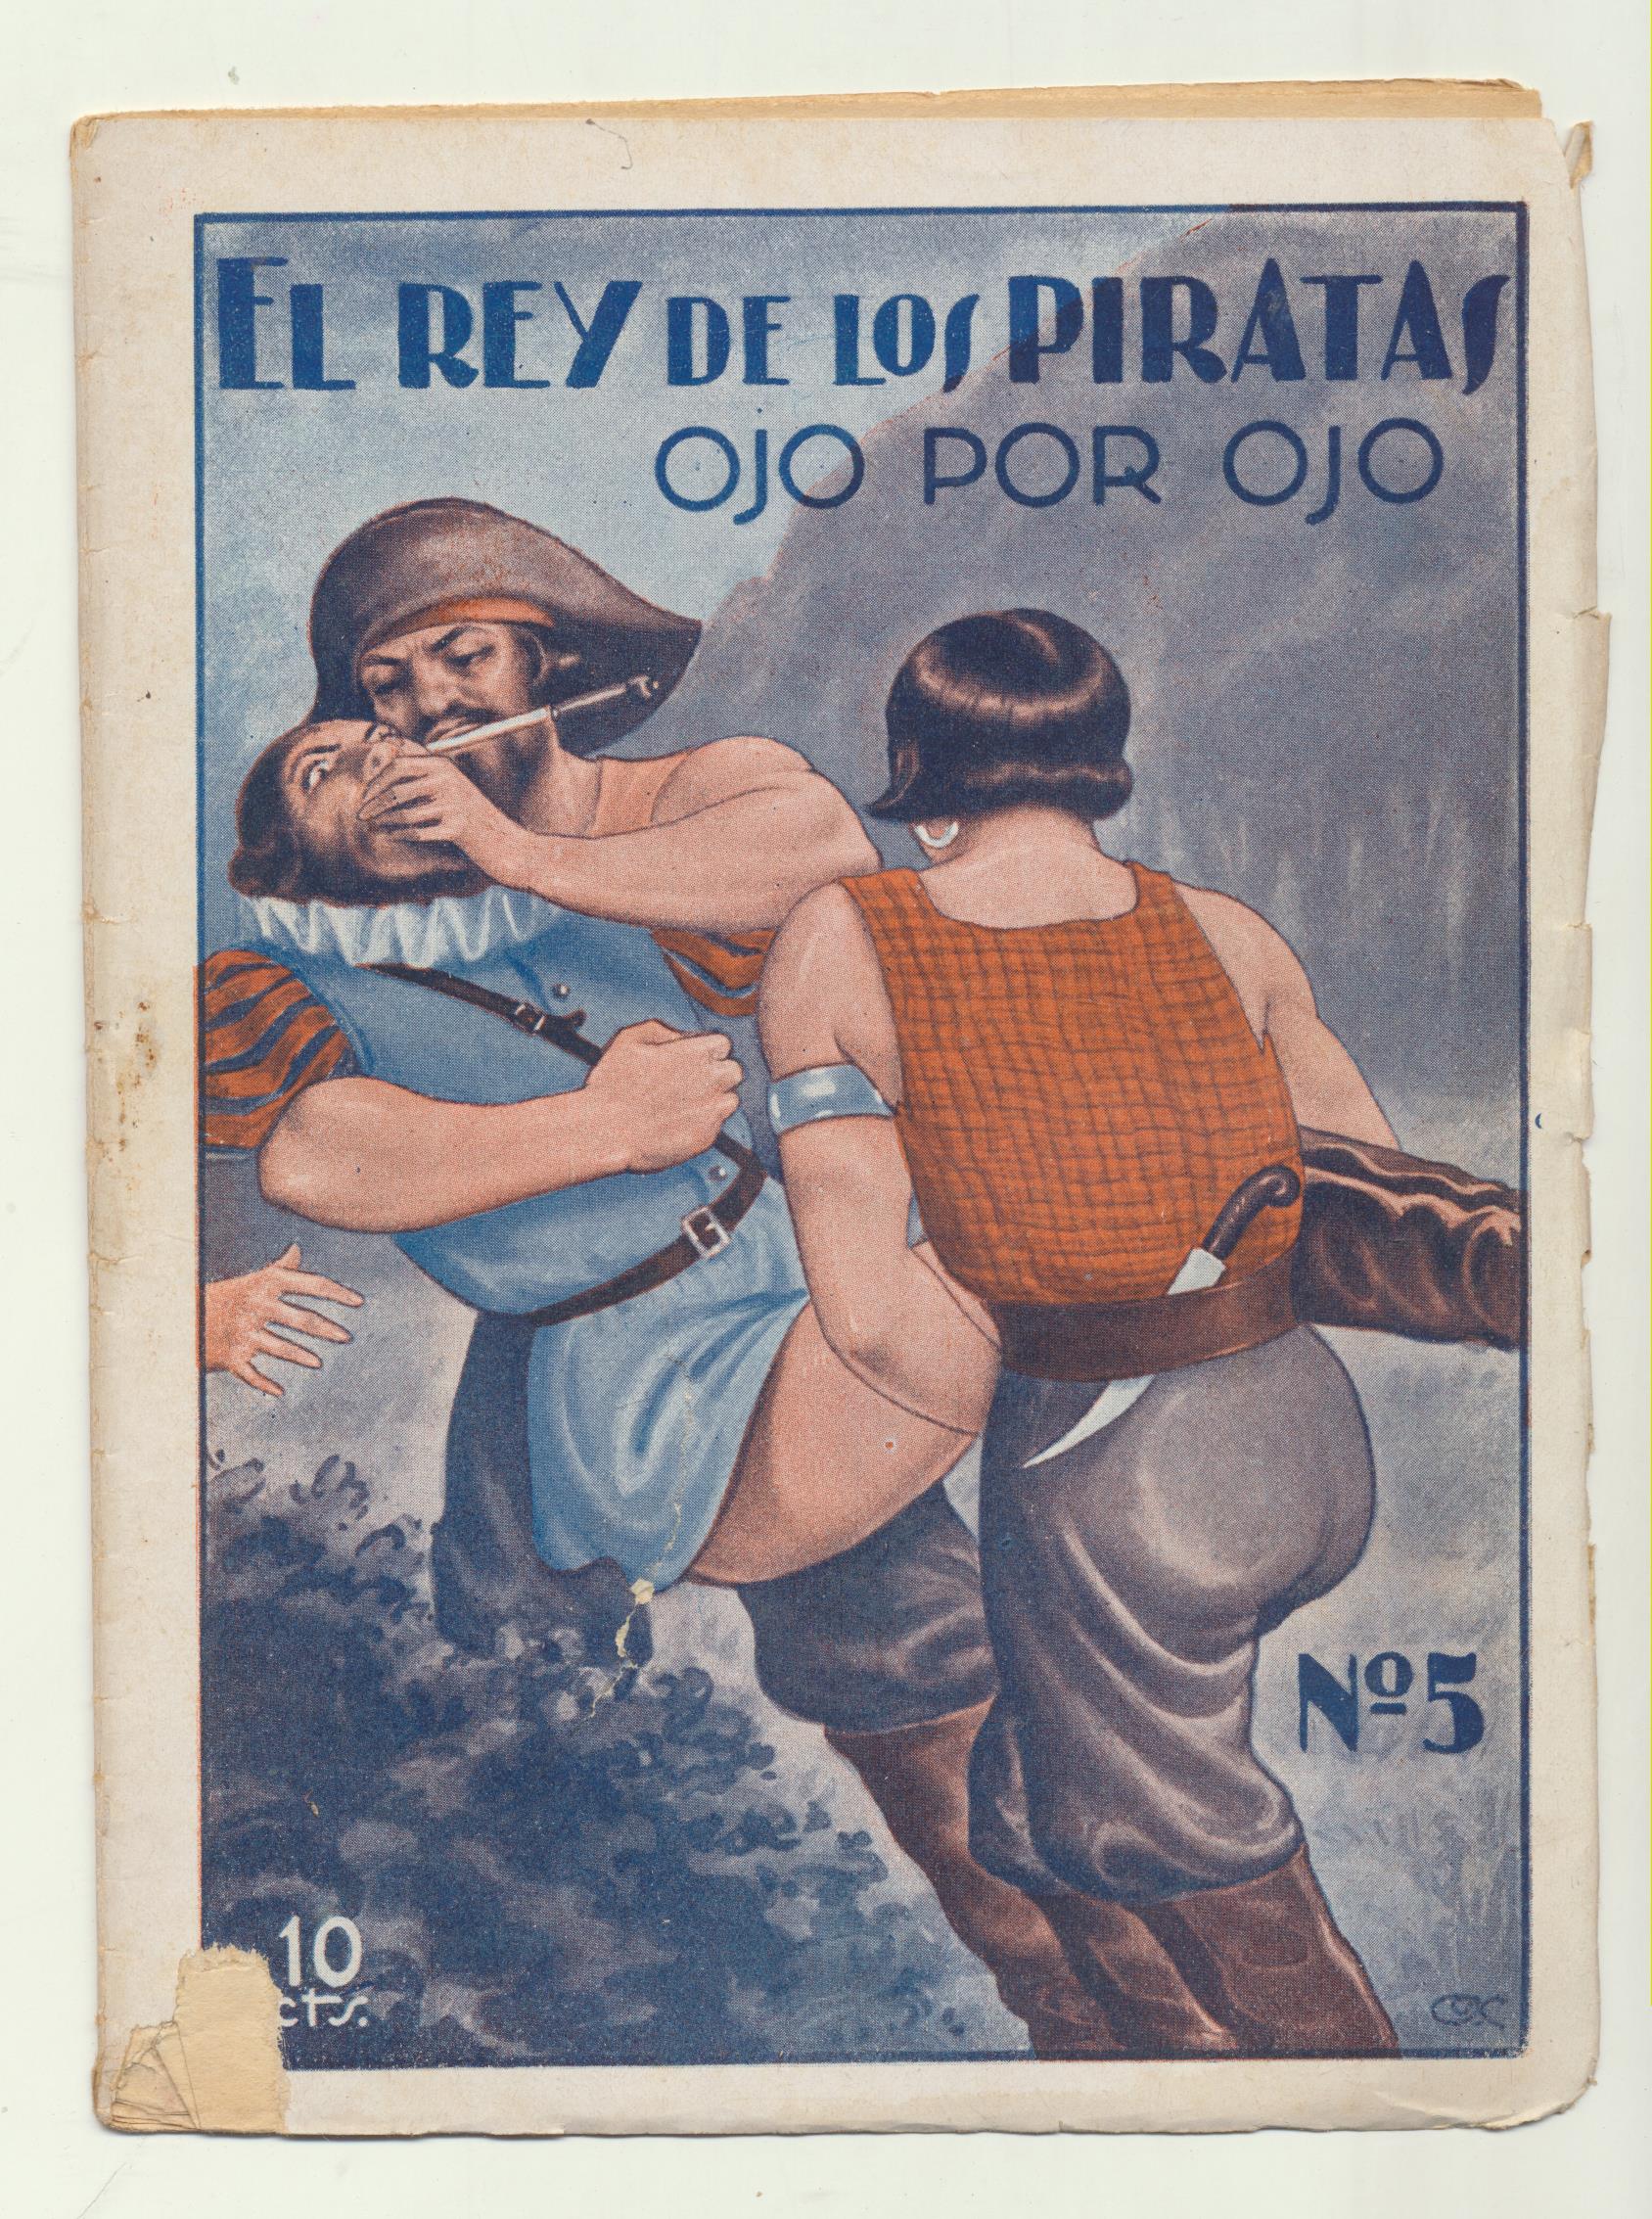 El Rey de los Piratas nº 5. Ediciones El cine 192? (18x13) 16 páginas con ilustraciones